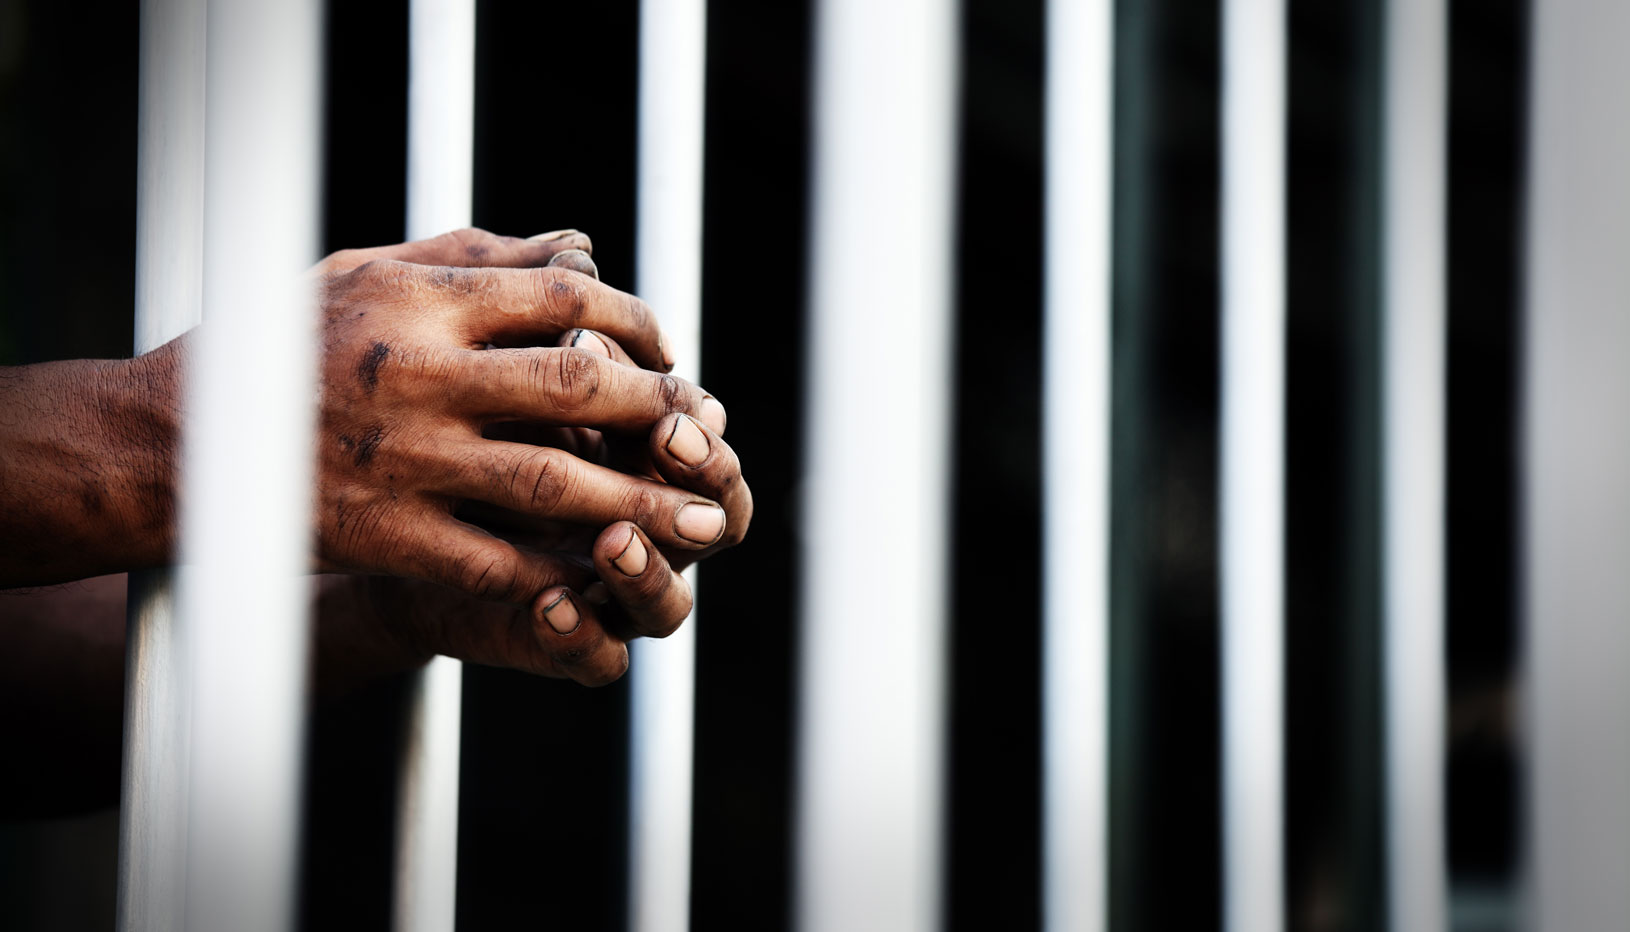 Prisoner's clasped hands resting on jail bars